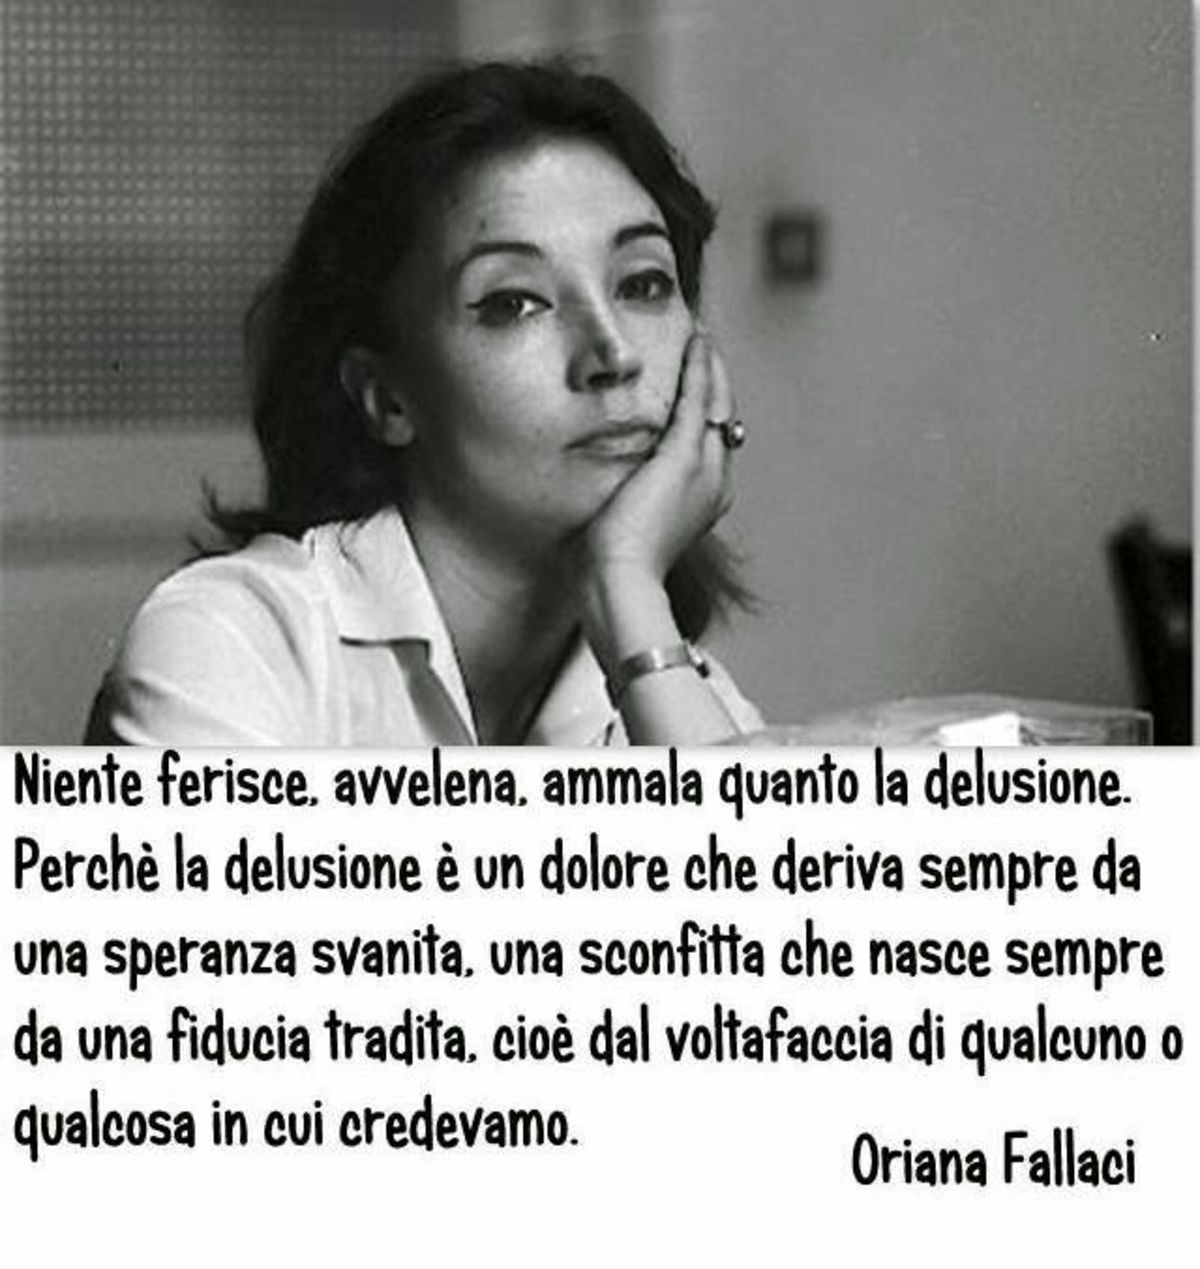 Niente ferisce, avvelena e ammala quanto la delusione. Oriana Fallaci